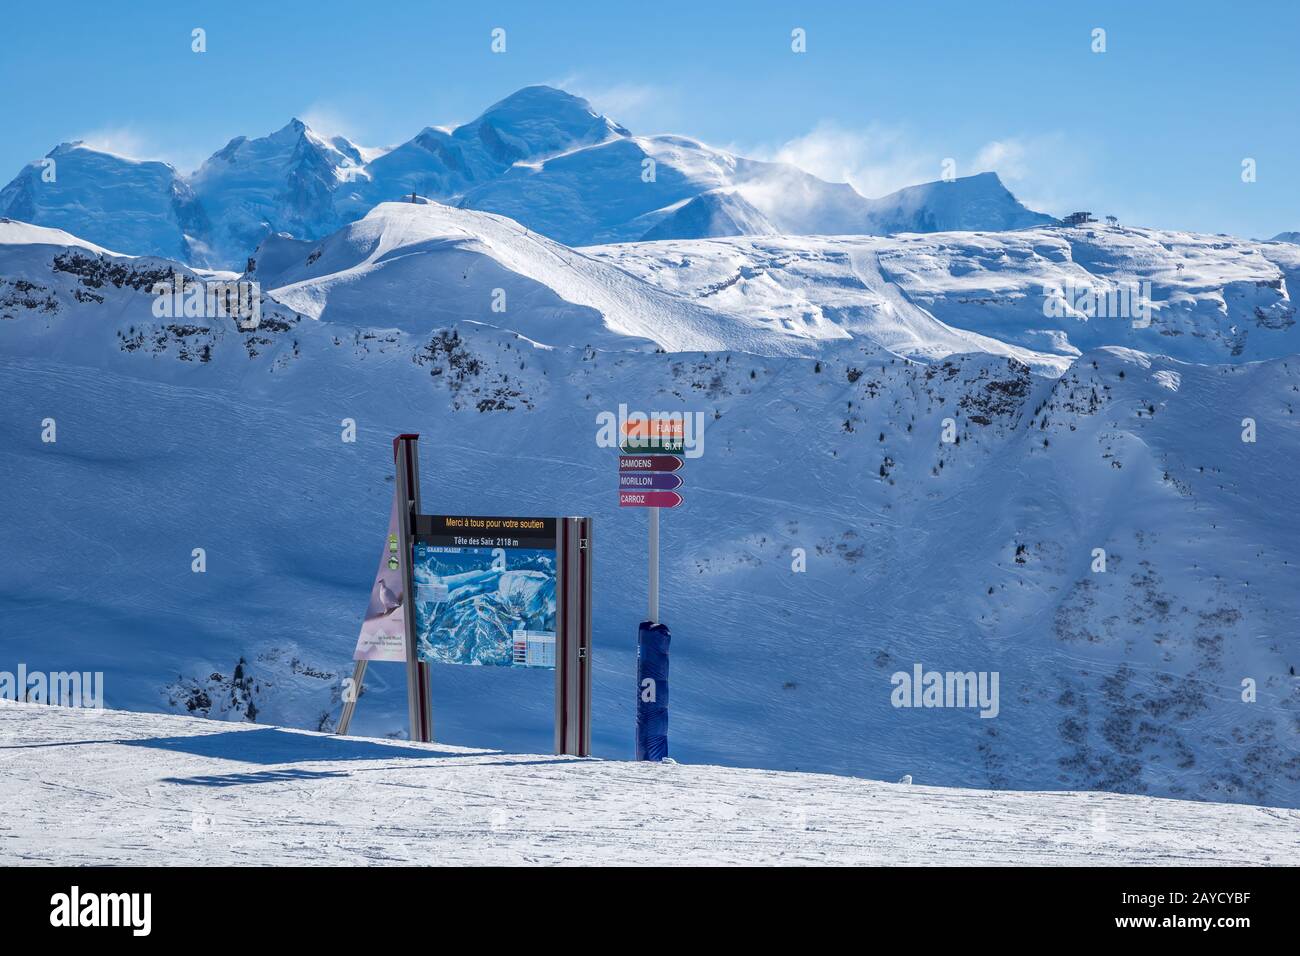 Pics de montagne avec téléphérique et pistes de ski Banque D'Images